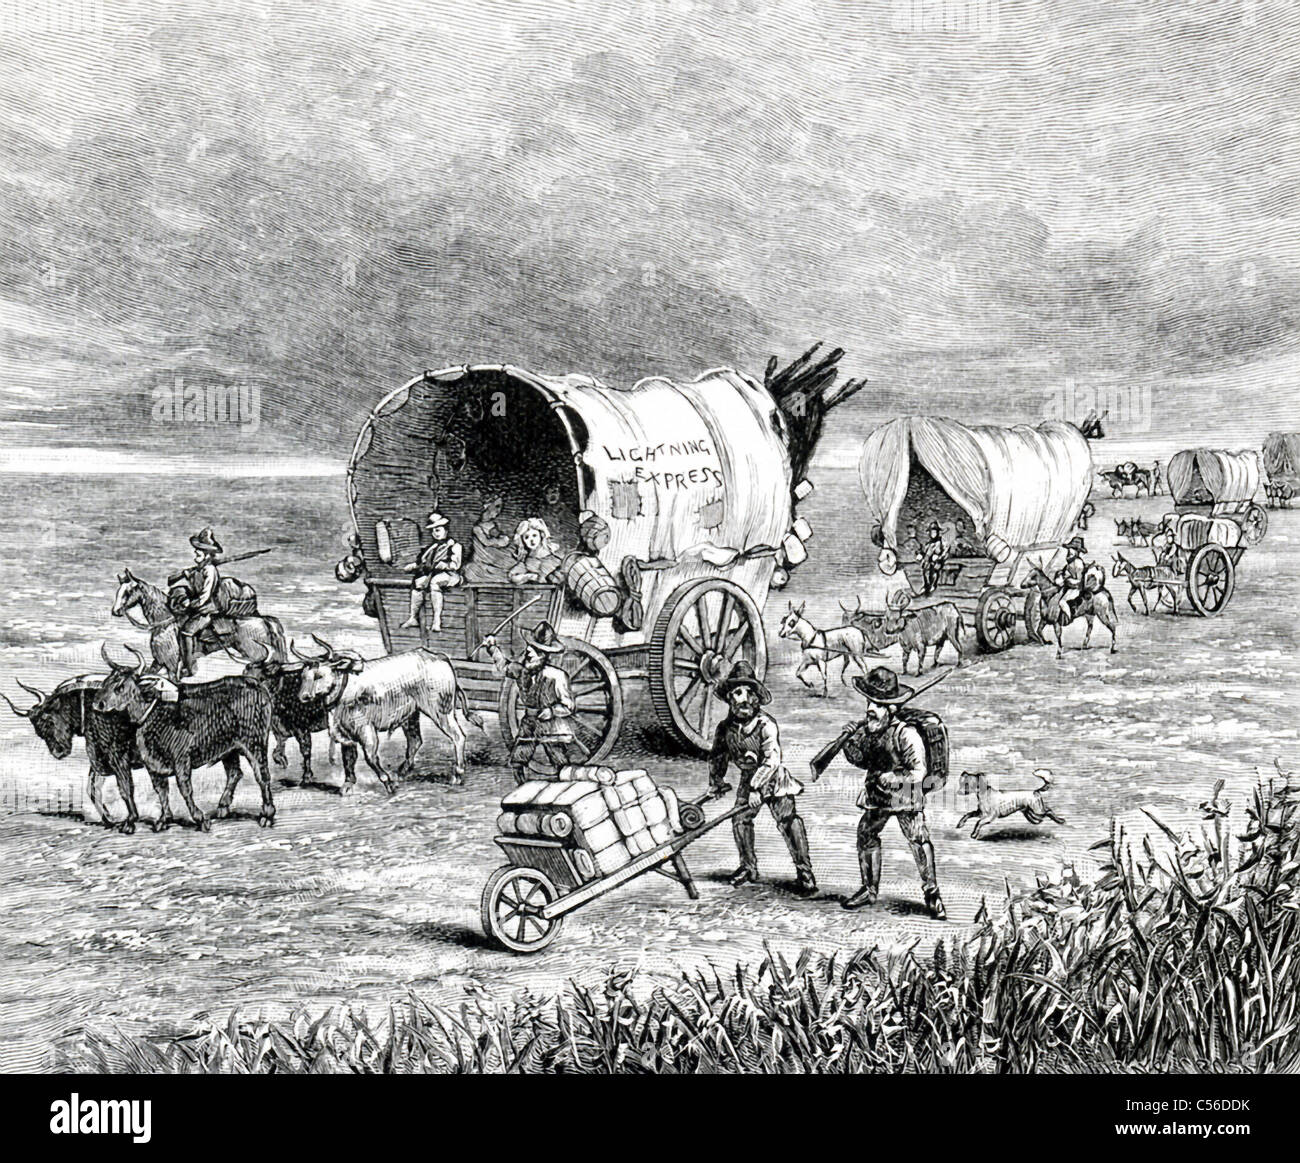 Su un carro coperto trainato da due paia di buoi e attraversando la pianura in1859 è apparso in grandi lettere "Lightning Express". Foto Stock